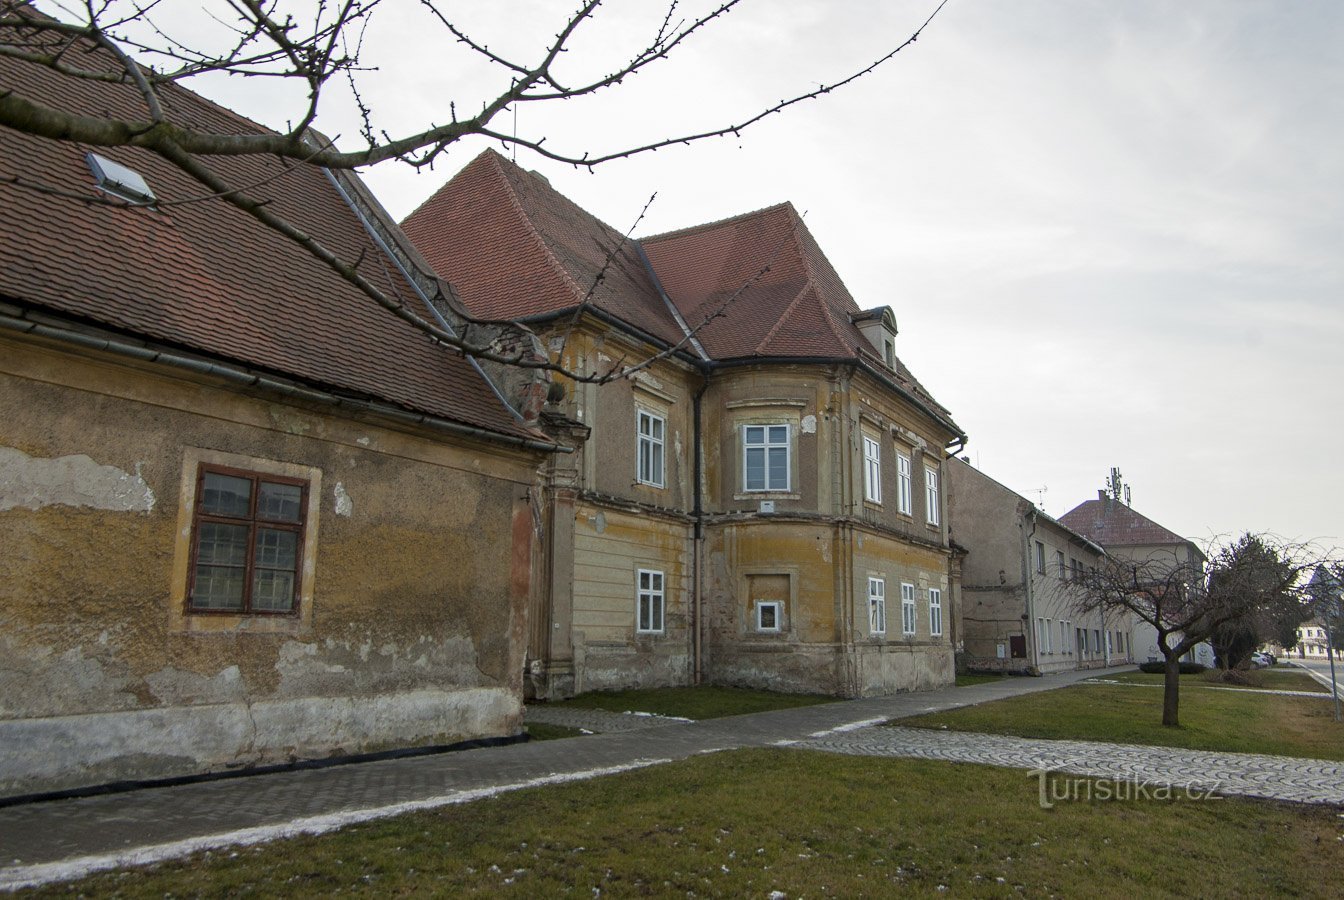 Náklo – rectorat, inițial o casă de vară în stil baroc